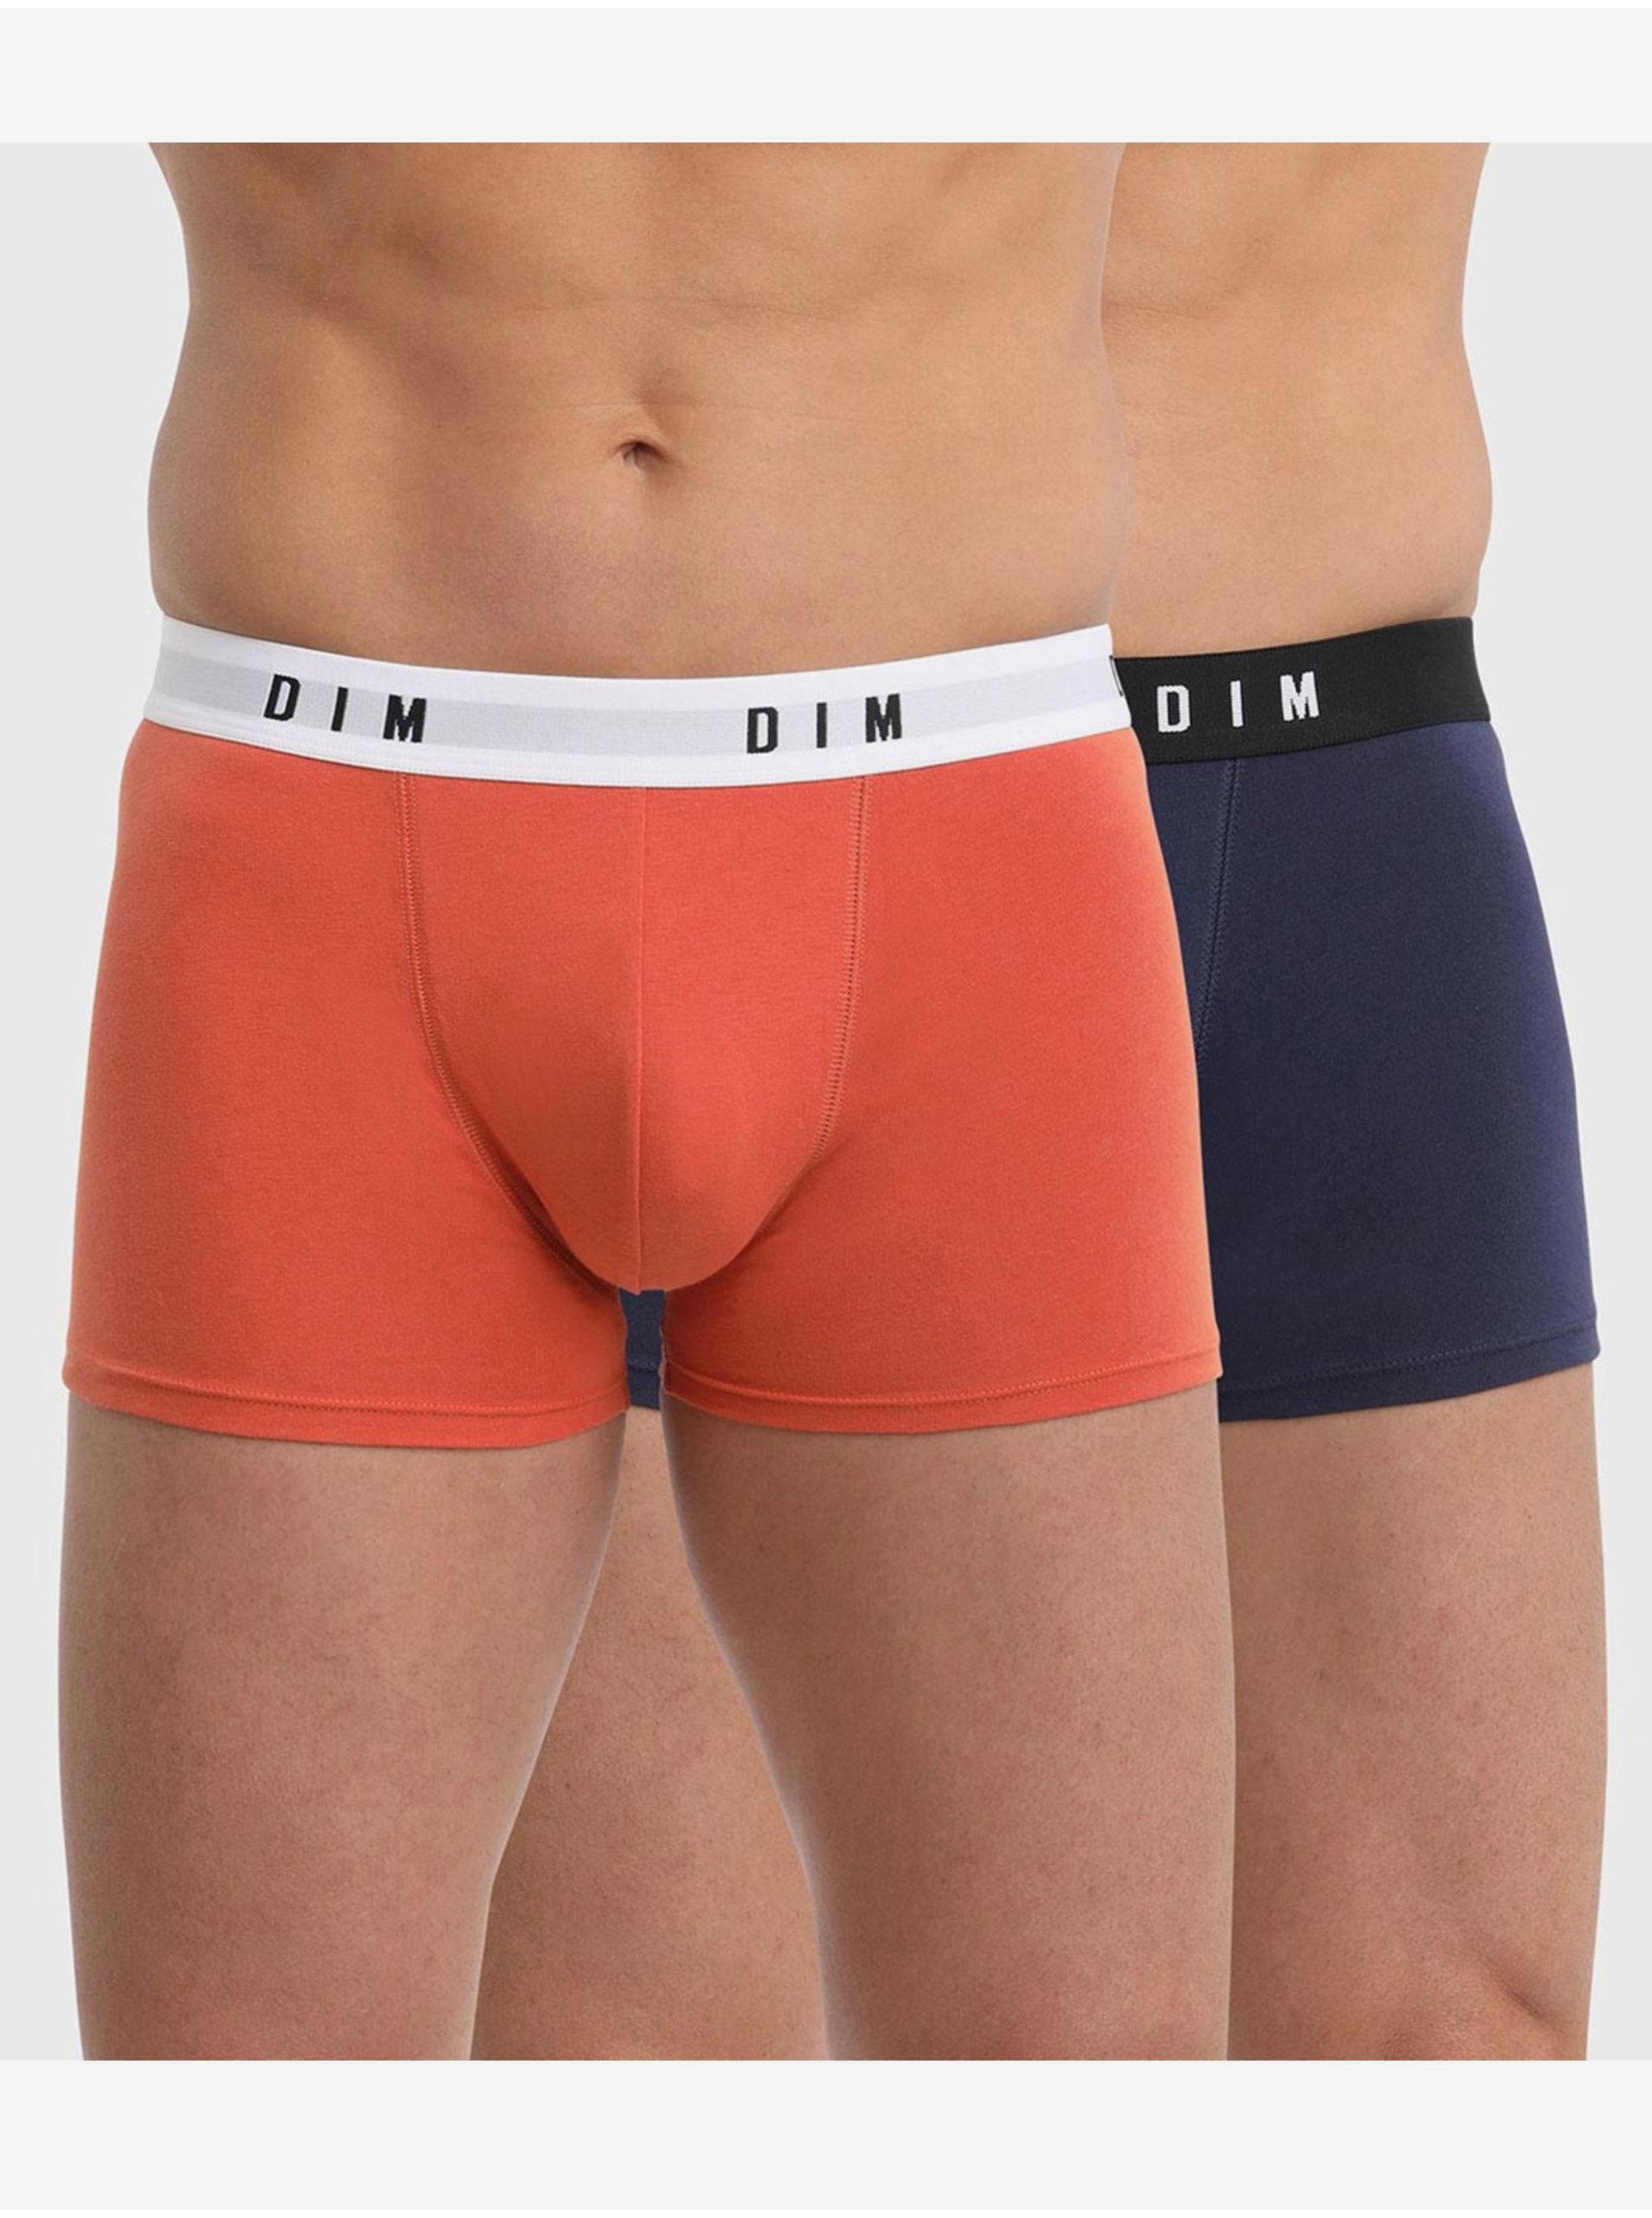 E-shop Sada dvoch pánskych boxeriek v oranžovej a tmavomodrej farbe Dim BOXER ORIGINAL 2x